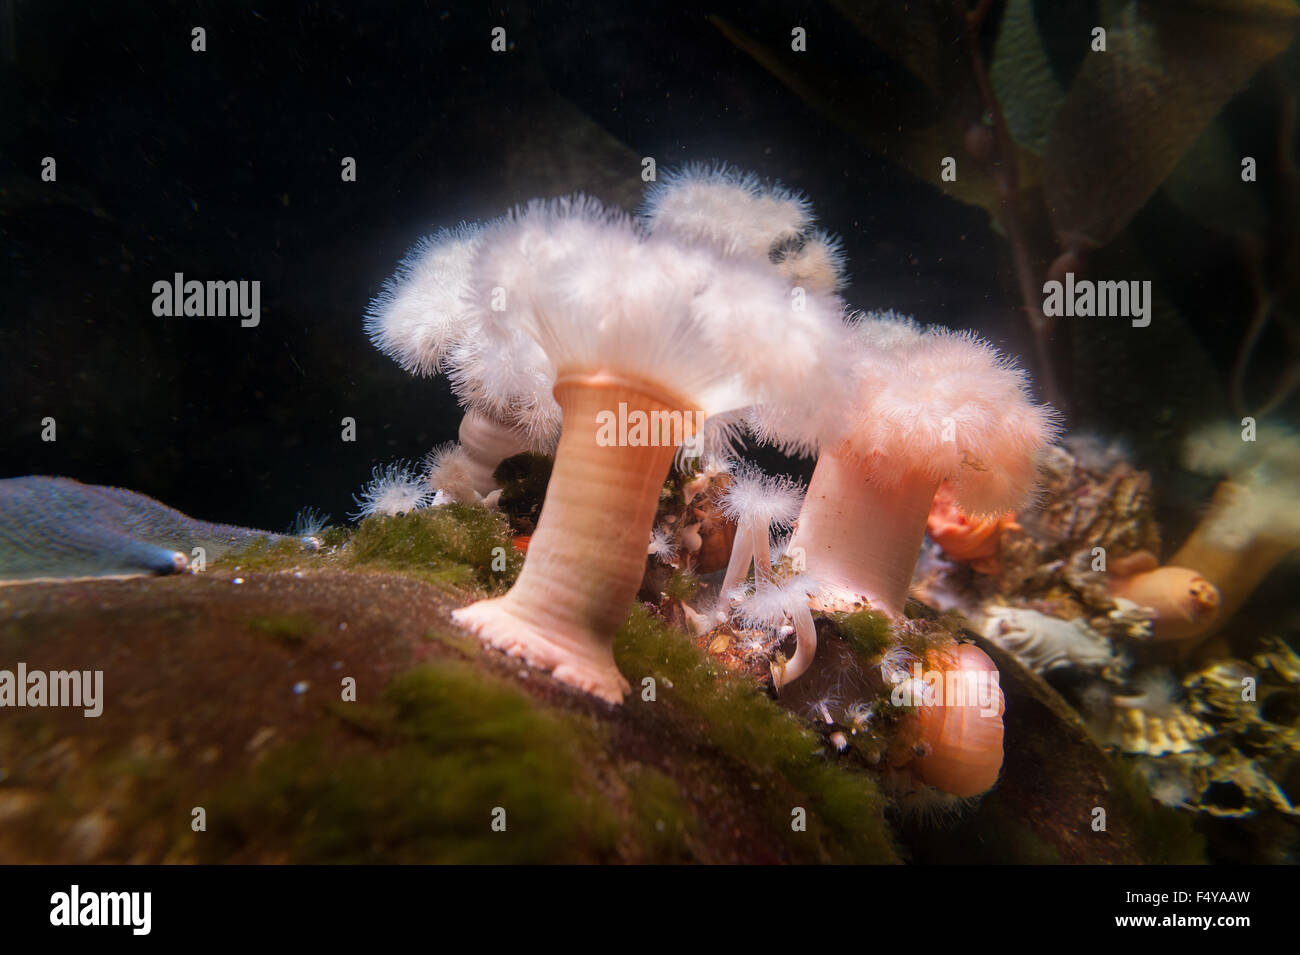 Anemoni plumose masse di belle e sottili tentacoli agitando lentamente in acque correnti prendere cibo come gli alberi della foresta o sull oceano pavimento Foto Stock